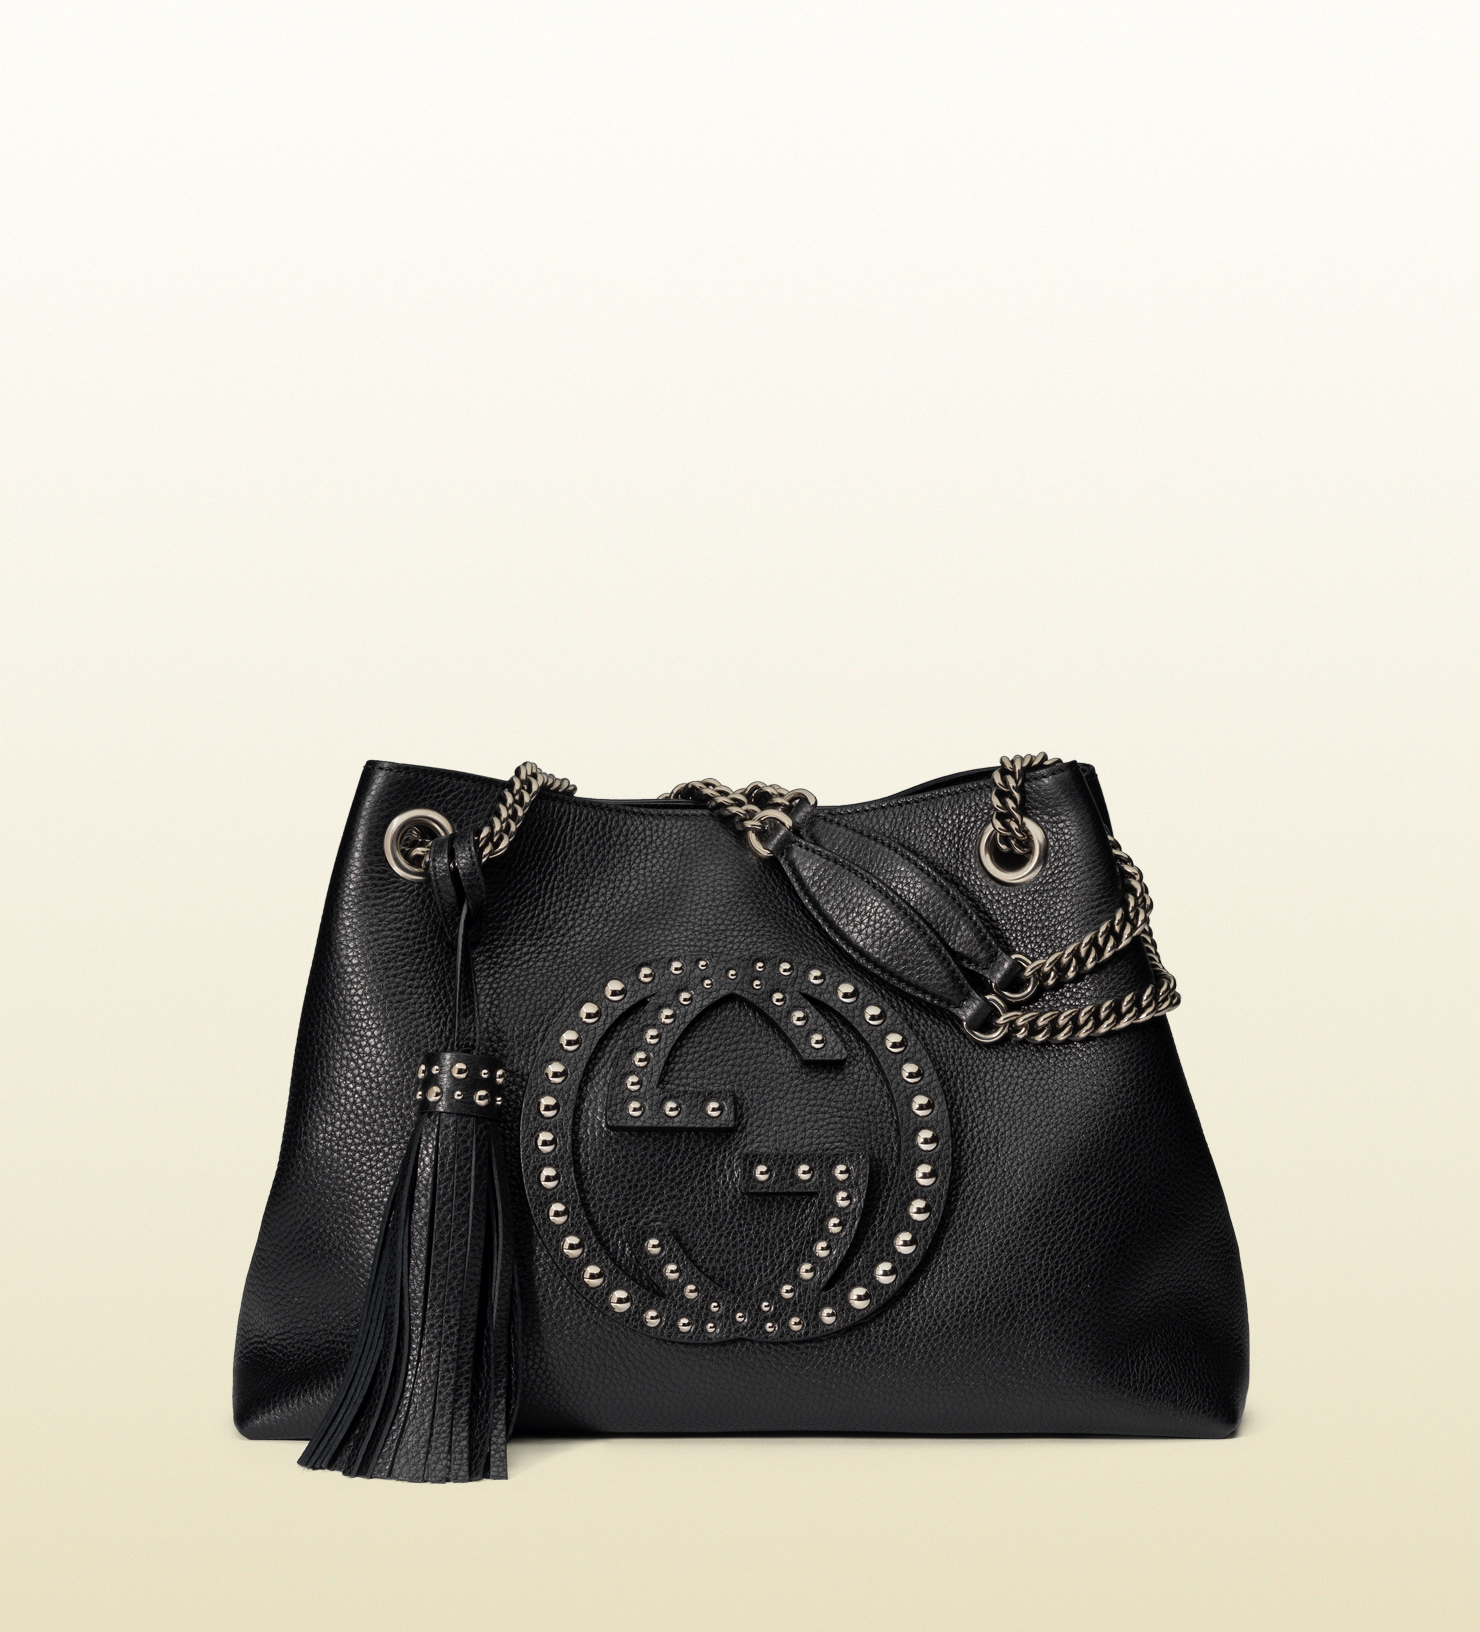 Lyst - Gucci Soho Studded Leather Shoulder Bag in Black